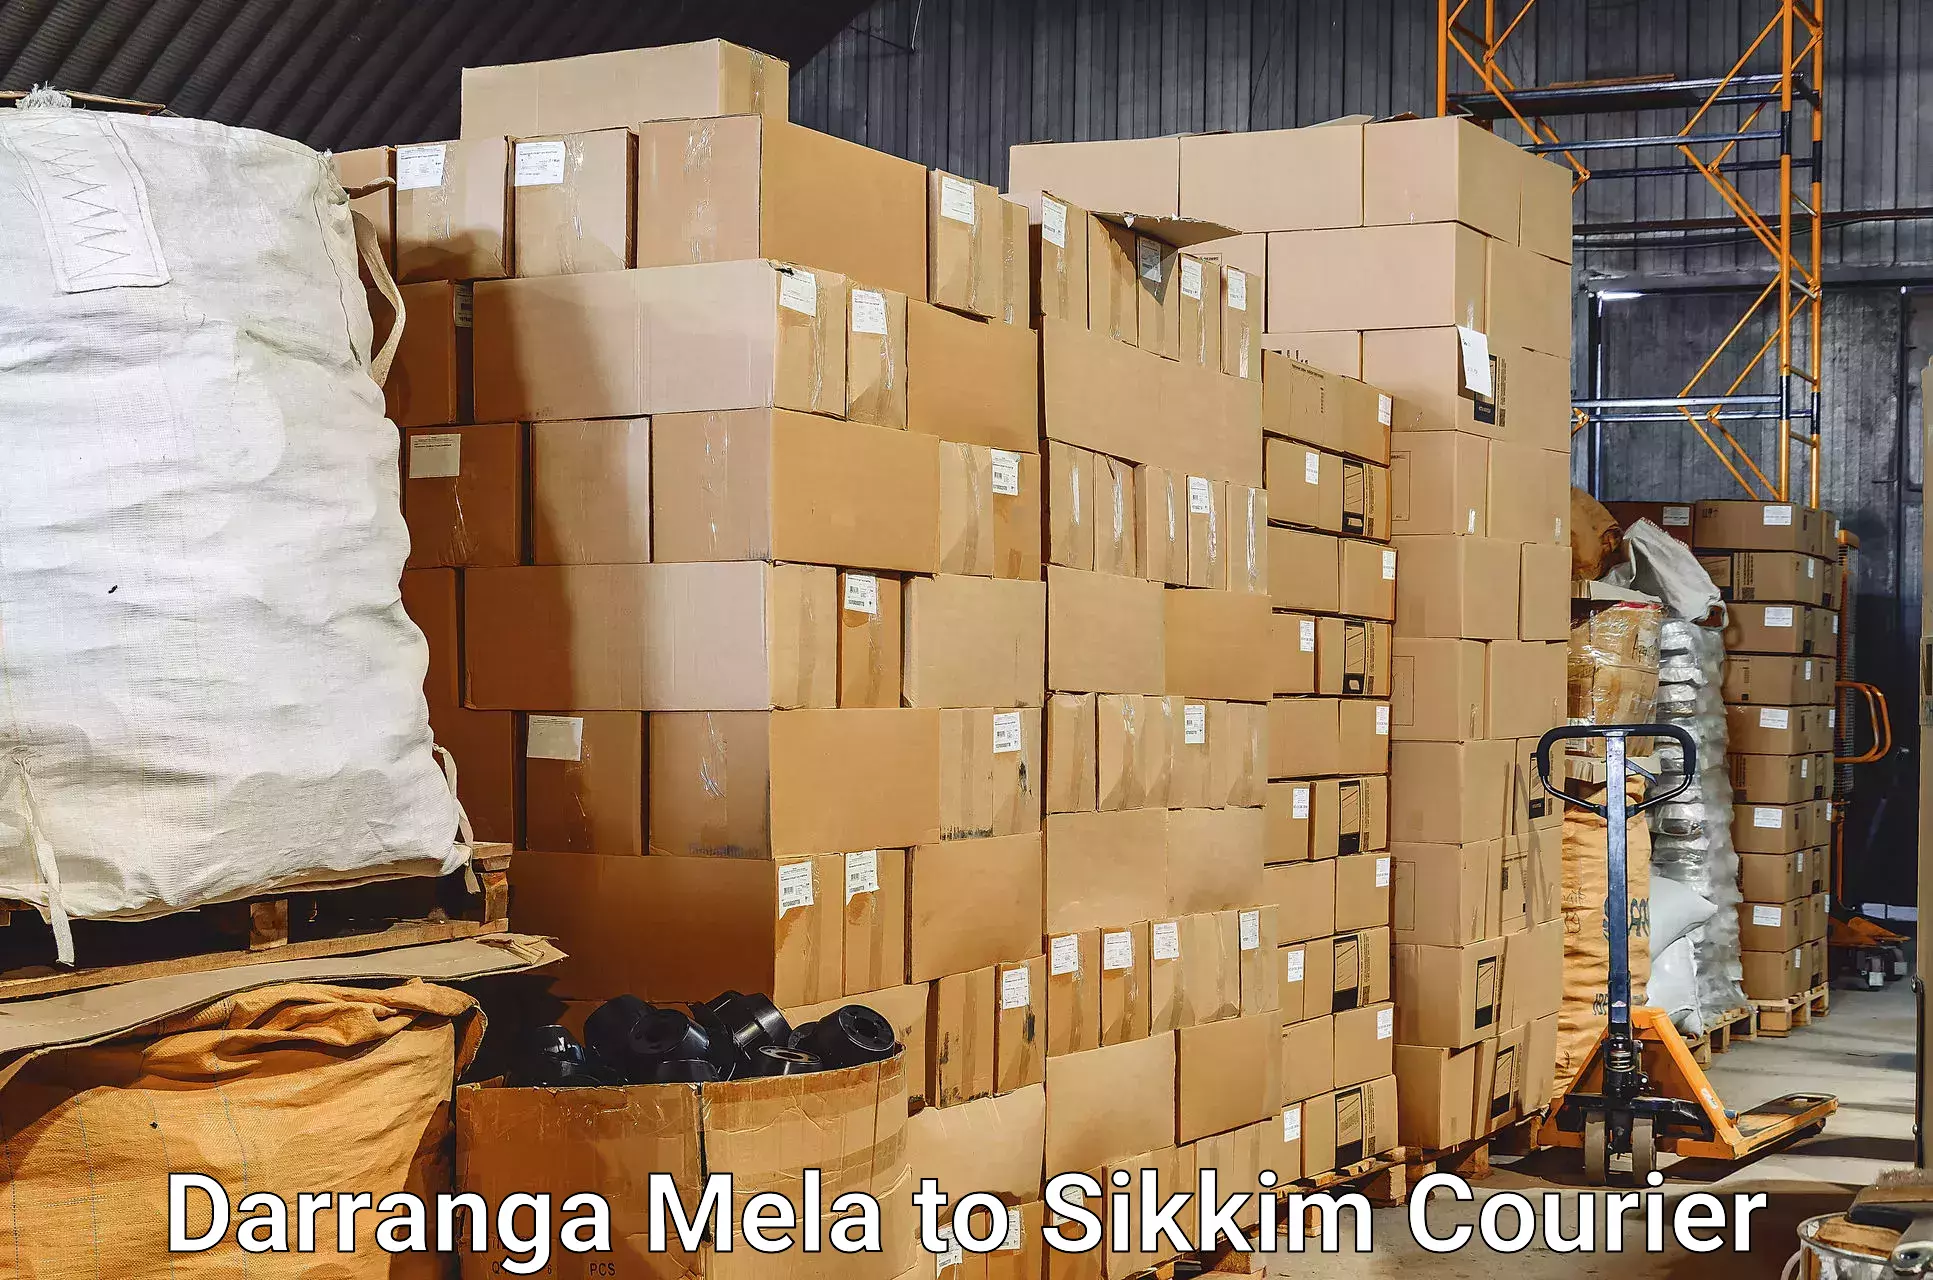 Baggage transport network Darranga Mela to Mangan